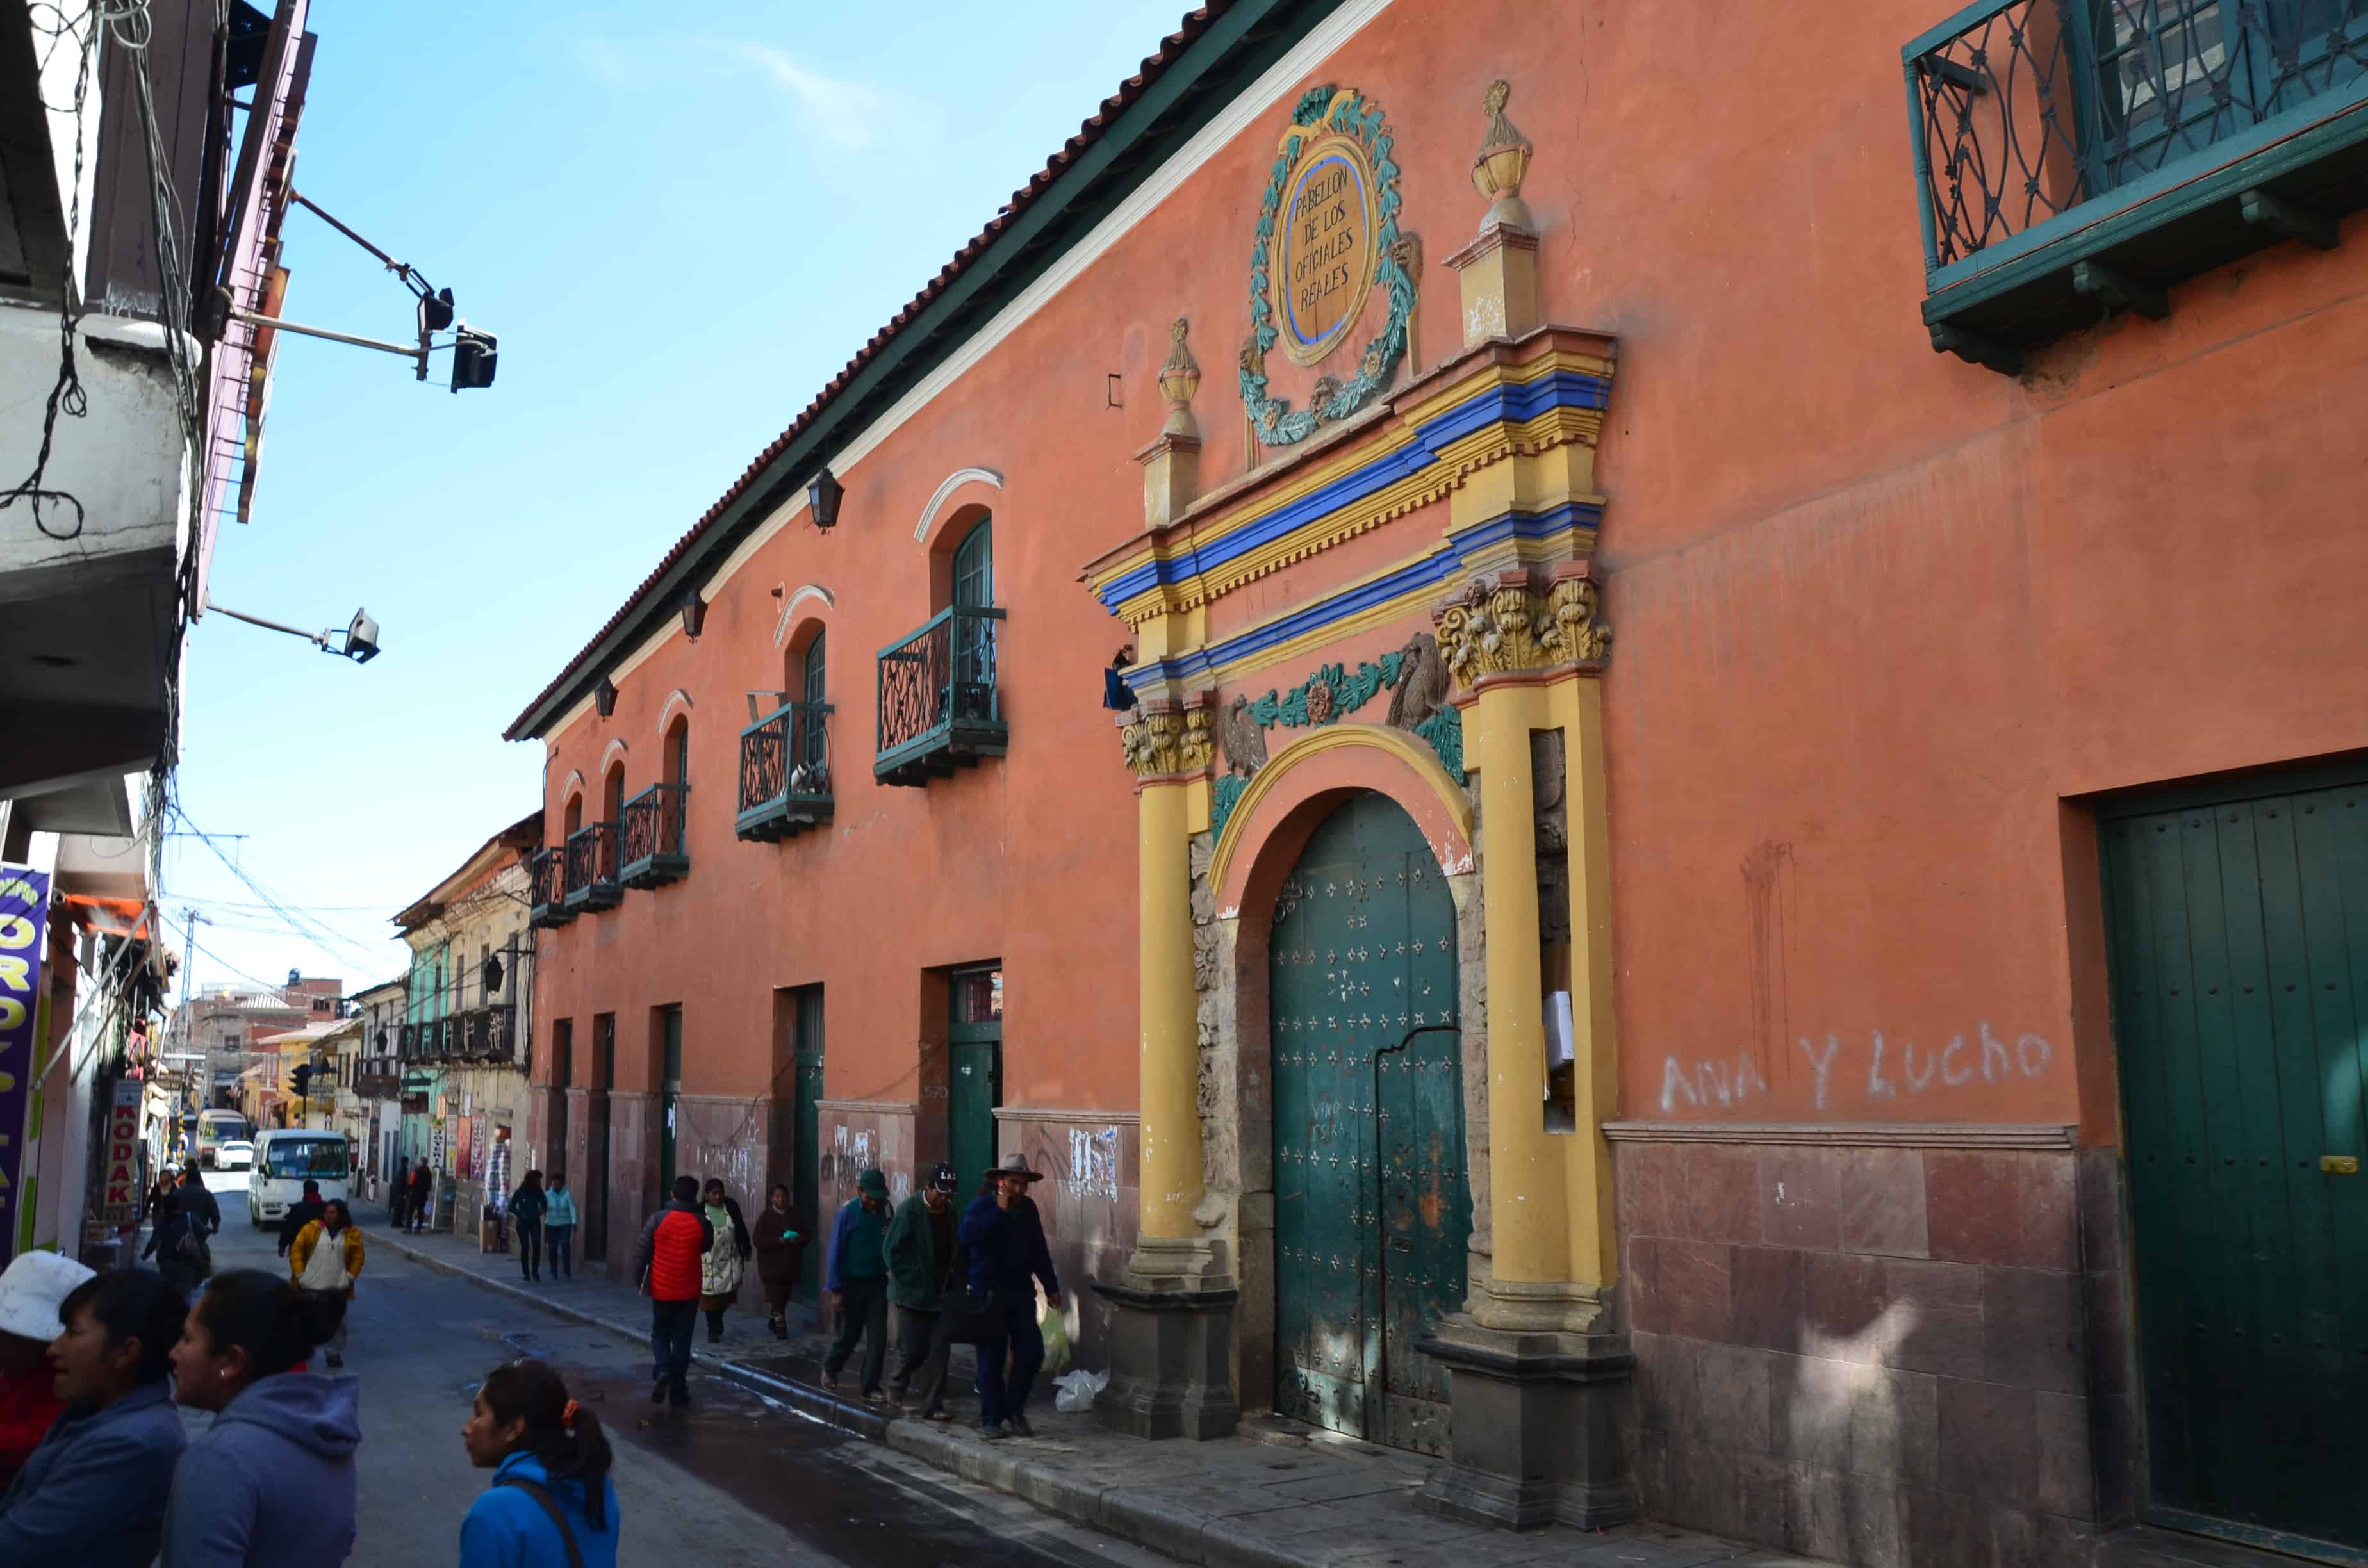 Pabellón de los Oficiales Reales in Potosí, Bolivia